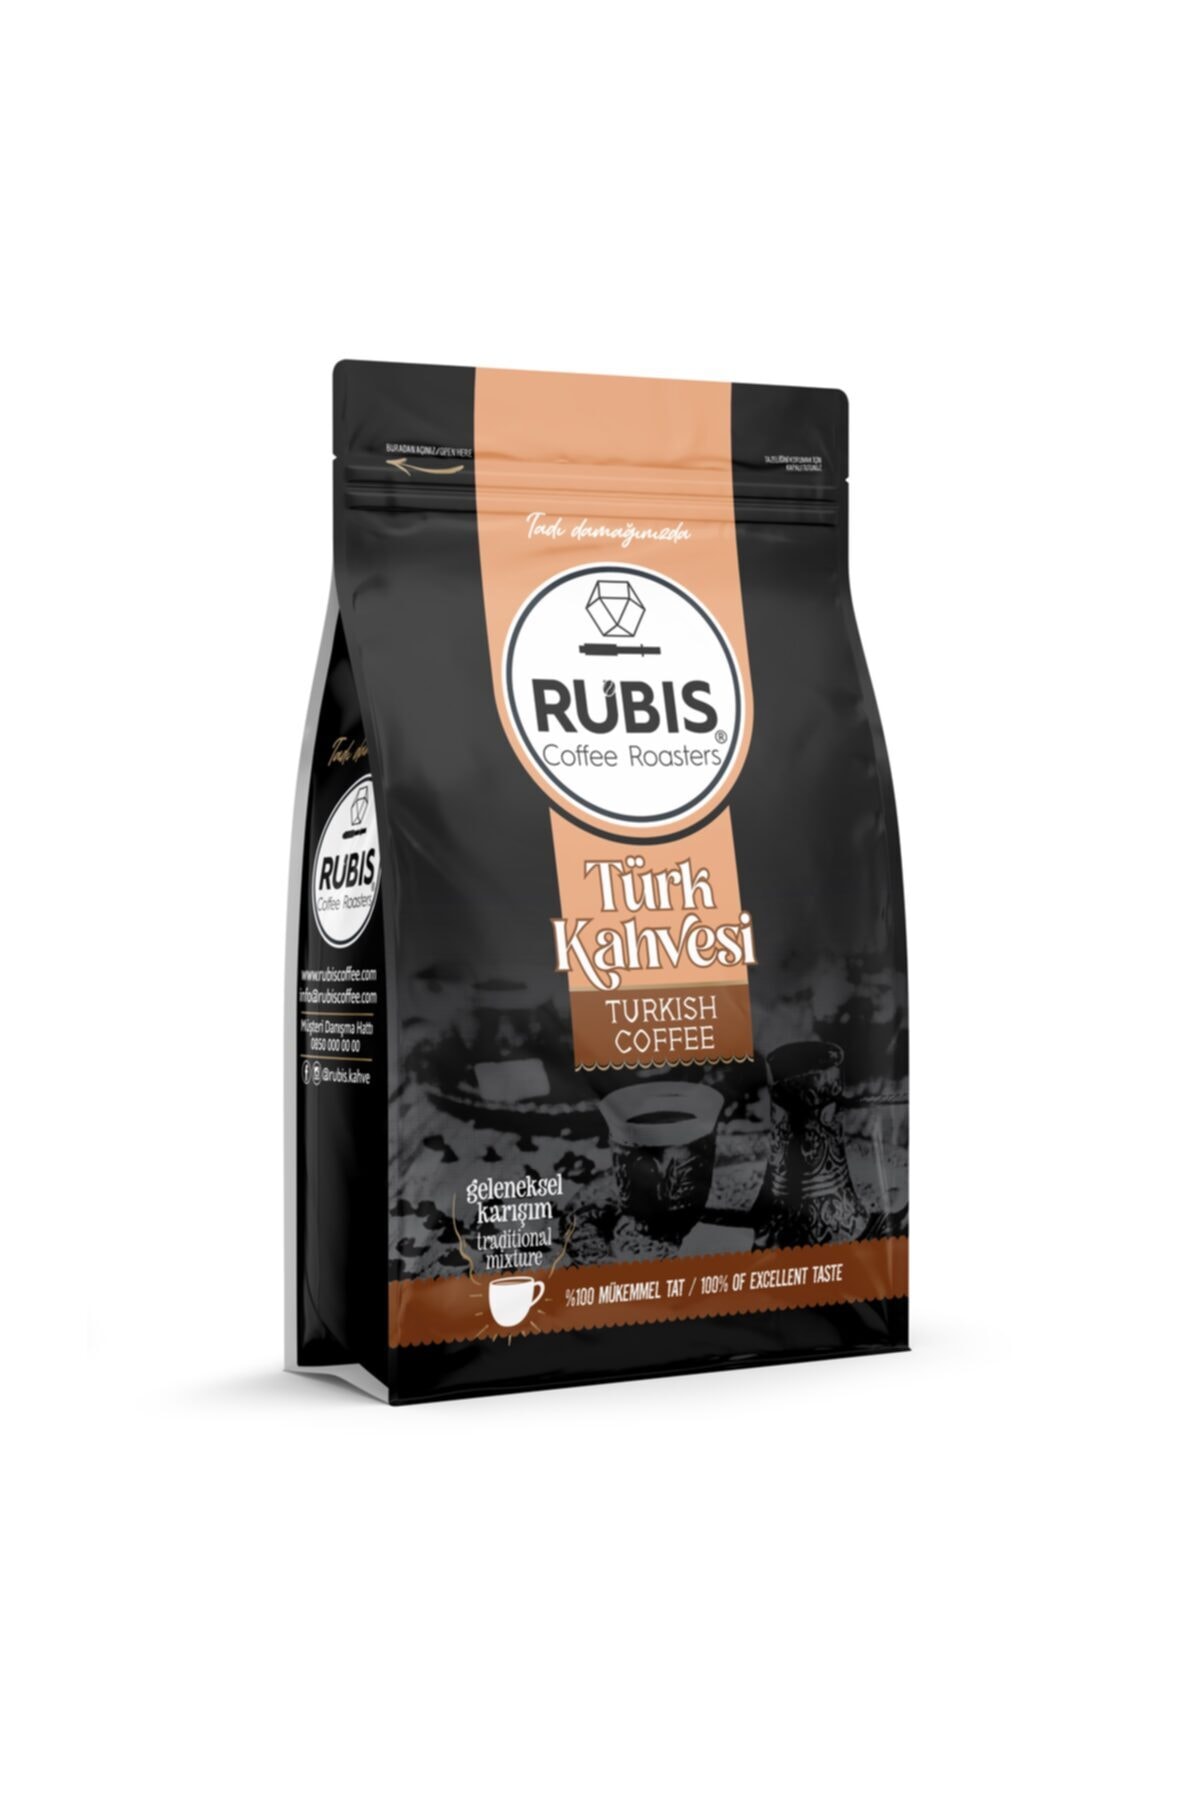 RUBİS COFFEE ROASTERS Türk Kahvesi 200gr.